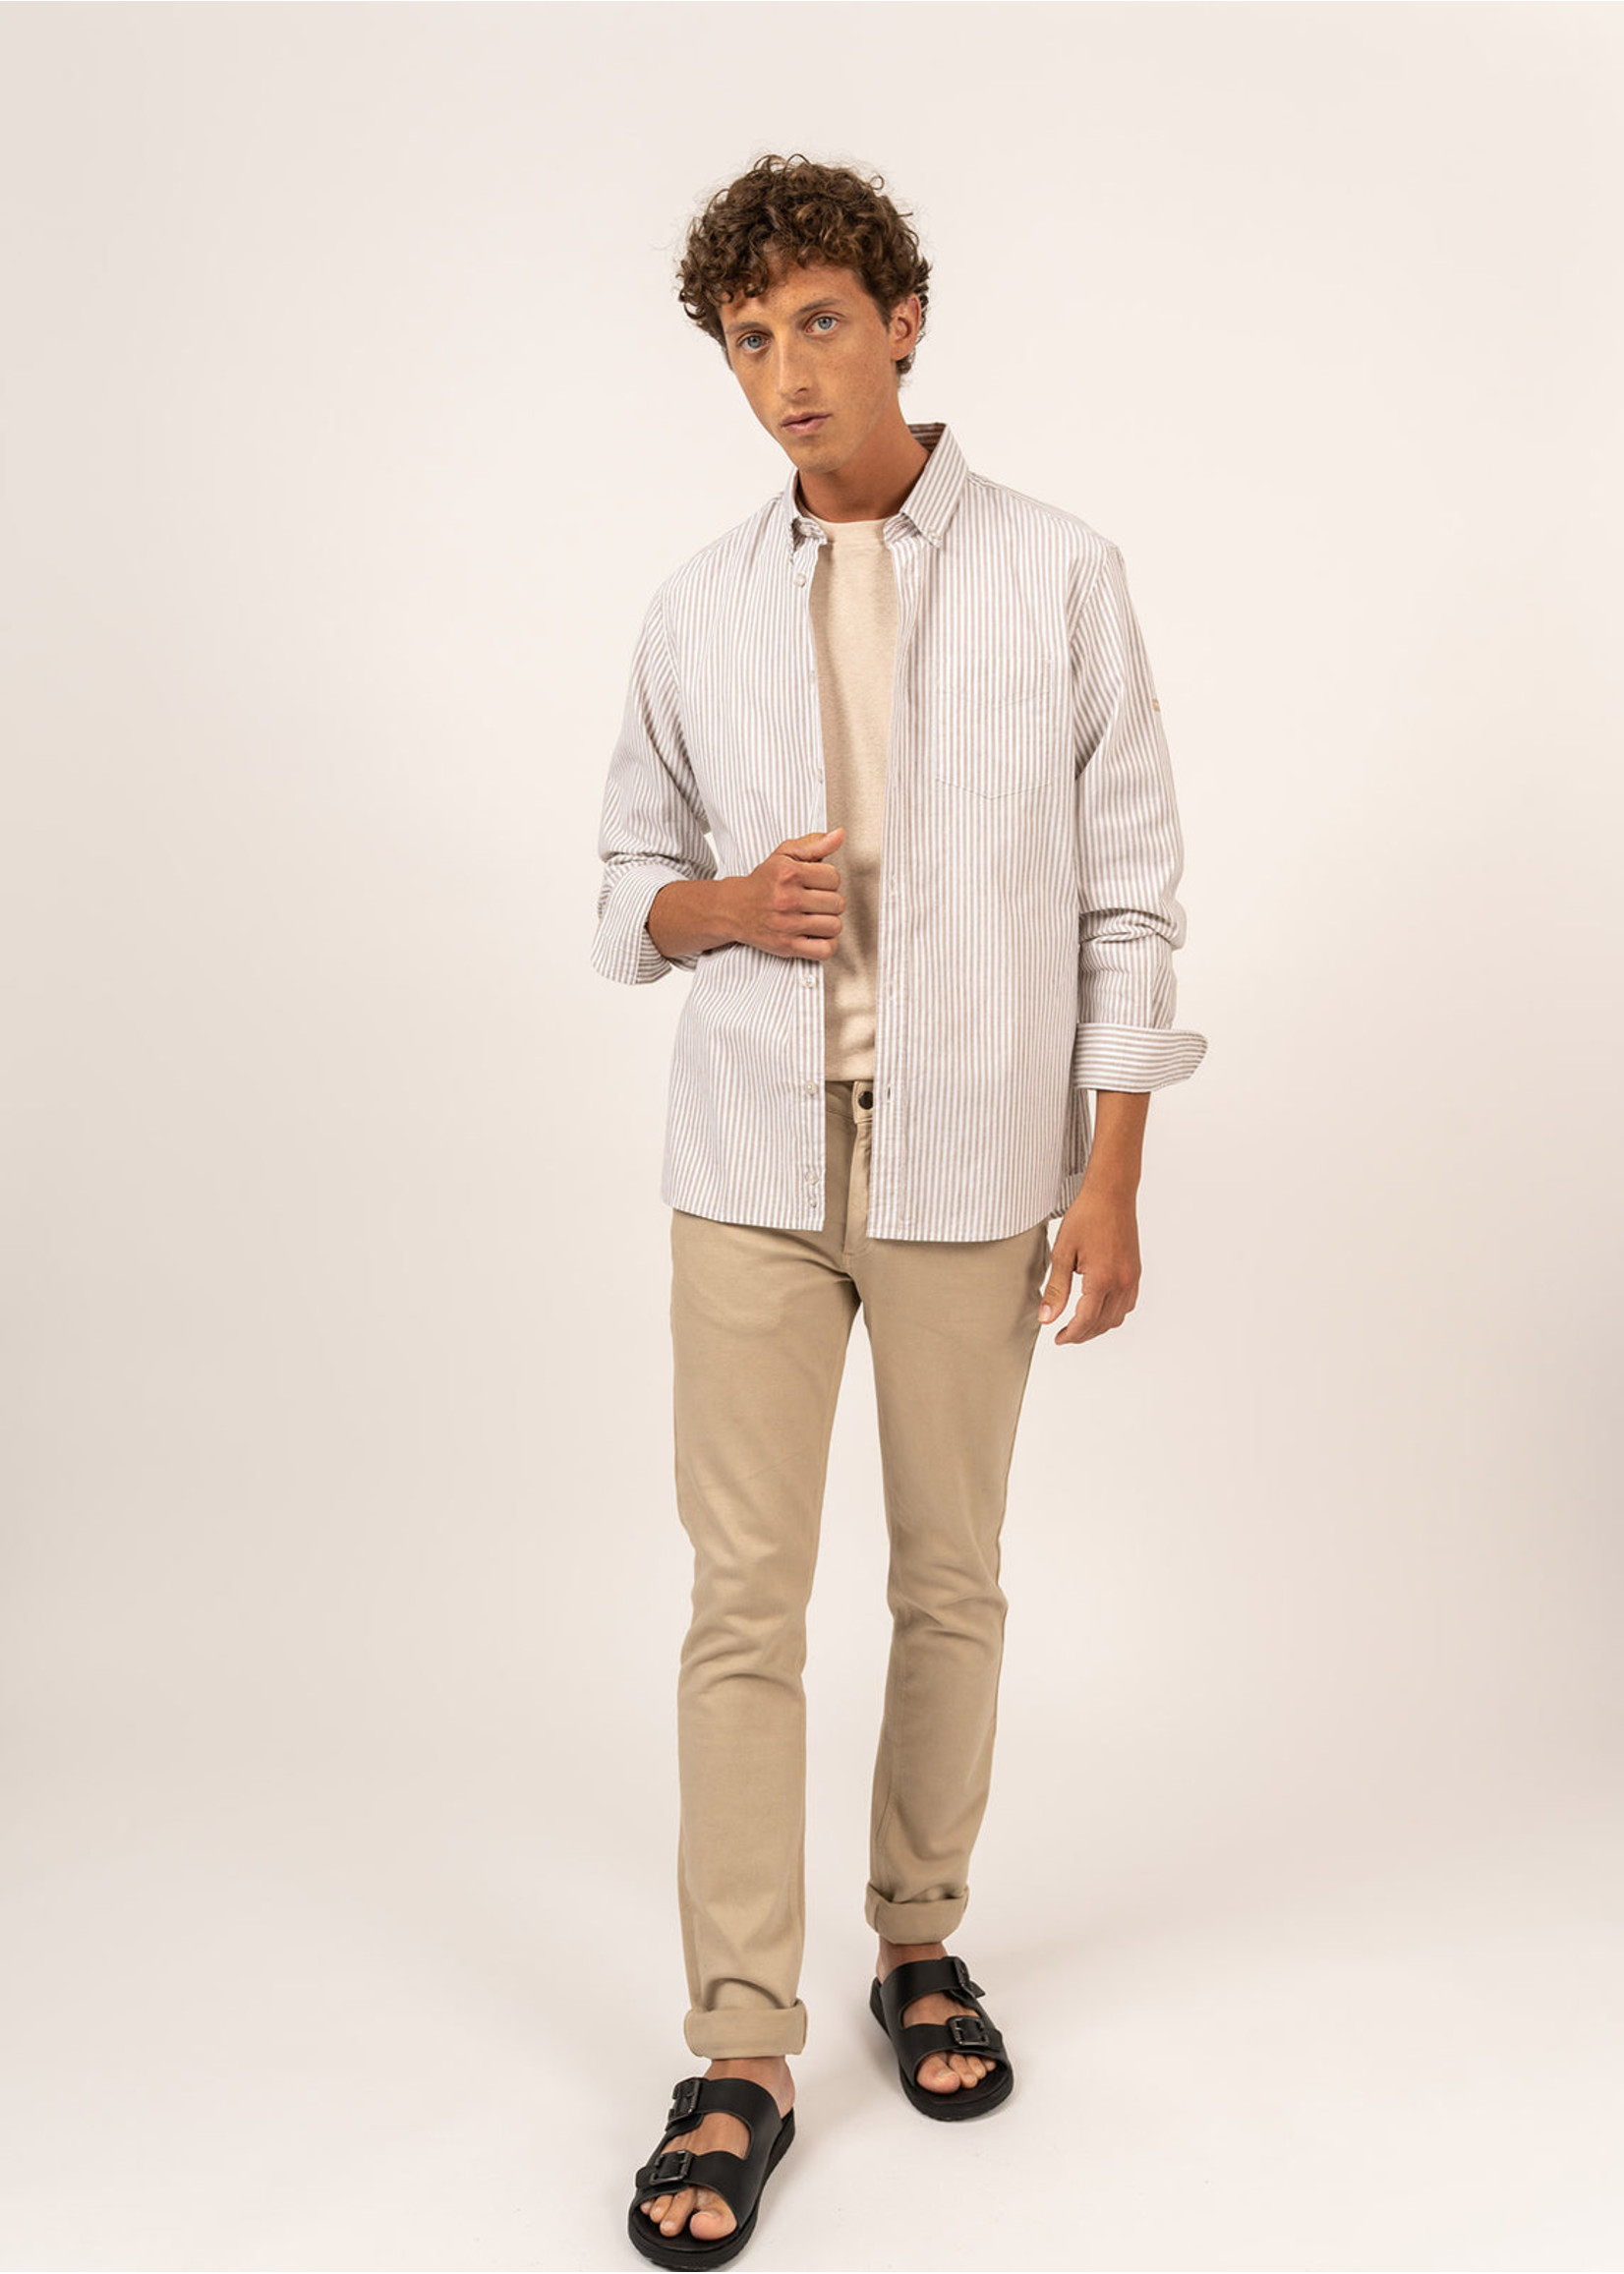 SAINT-JAMES Men's Mathias cotton and linen striped shirt